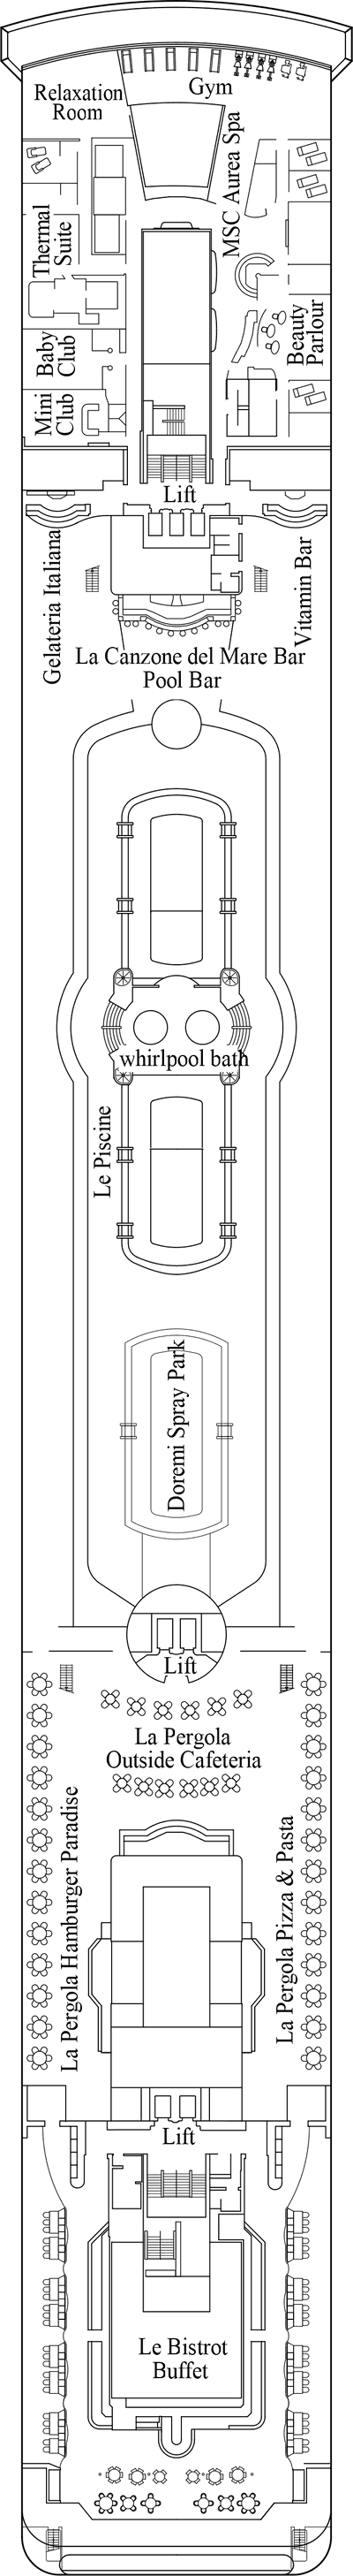 MSC Lirica - Decksplan Deck 11